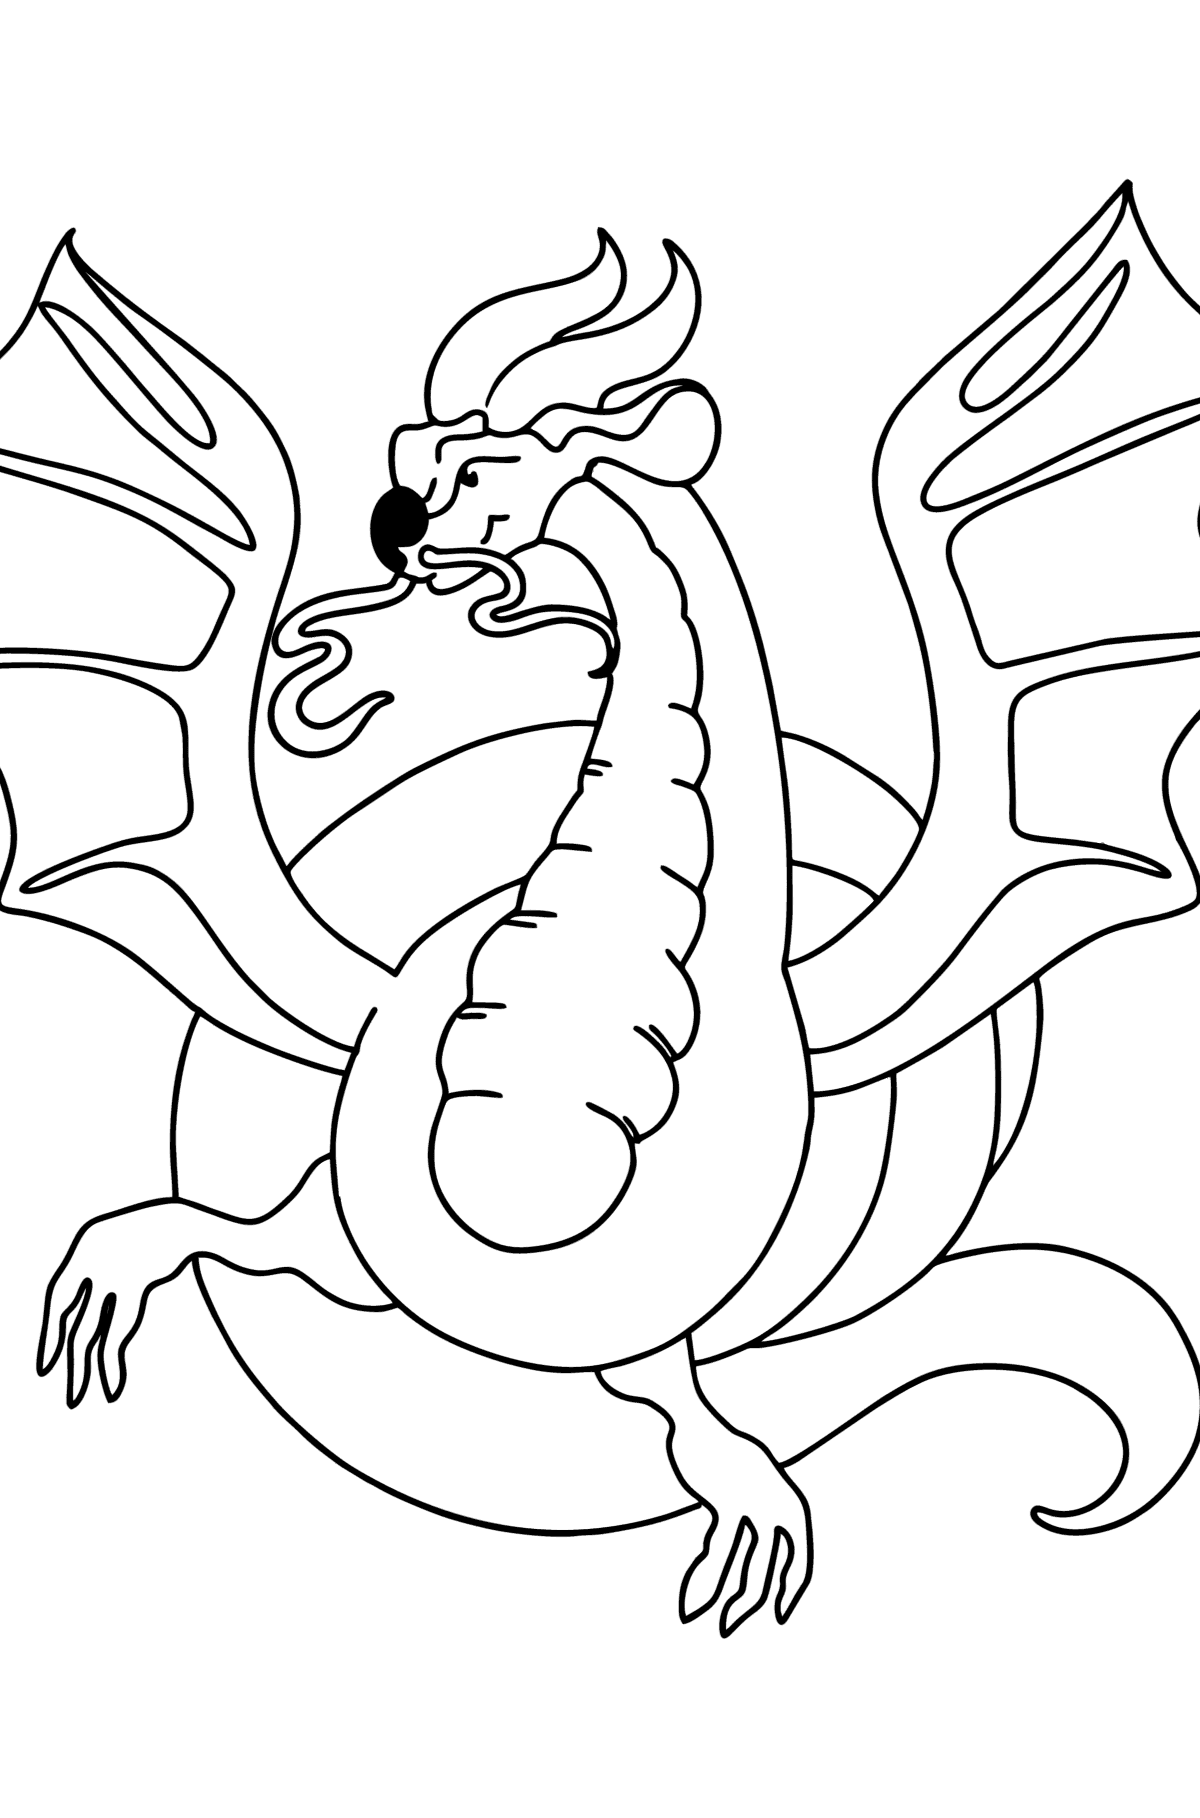 Desen de colorat dragon periculos - Desene de colorat pentru copii